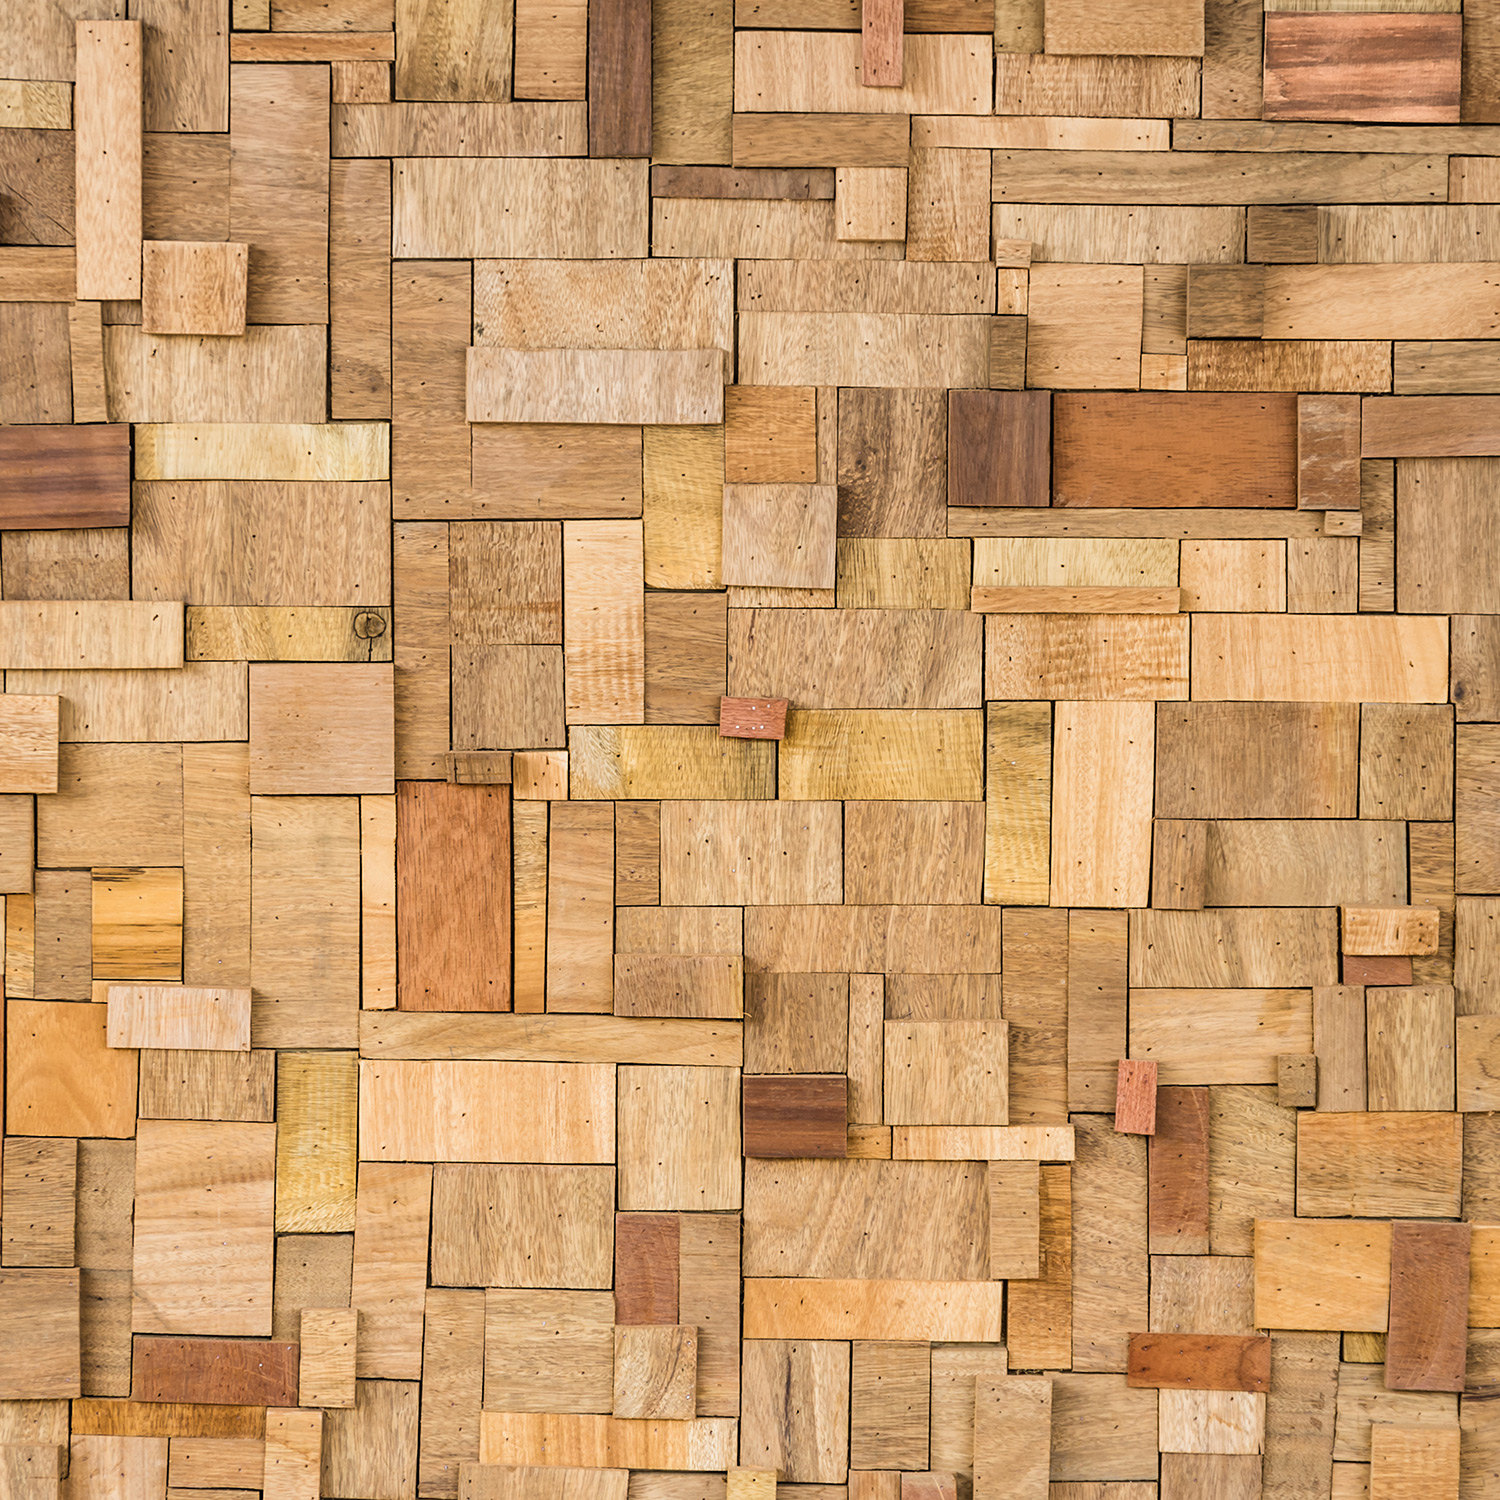 Uneven Wood - Wooden Texture Wallpaper Hd 3d - 1500x1500 Wallpaper -  